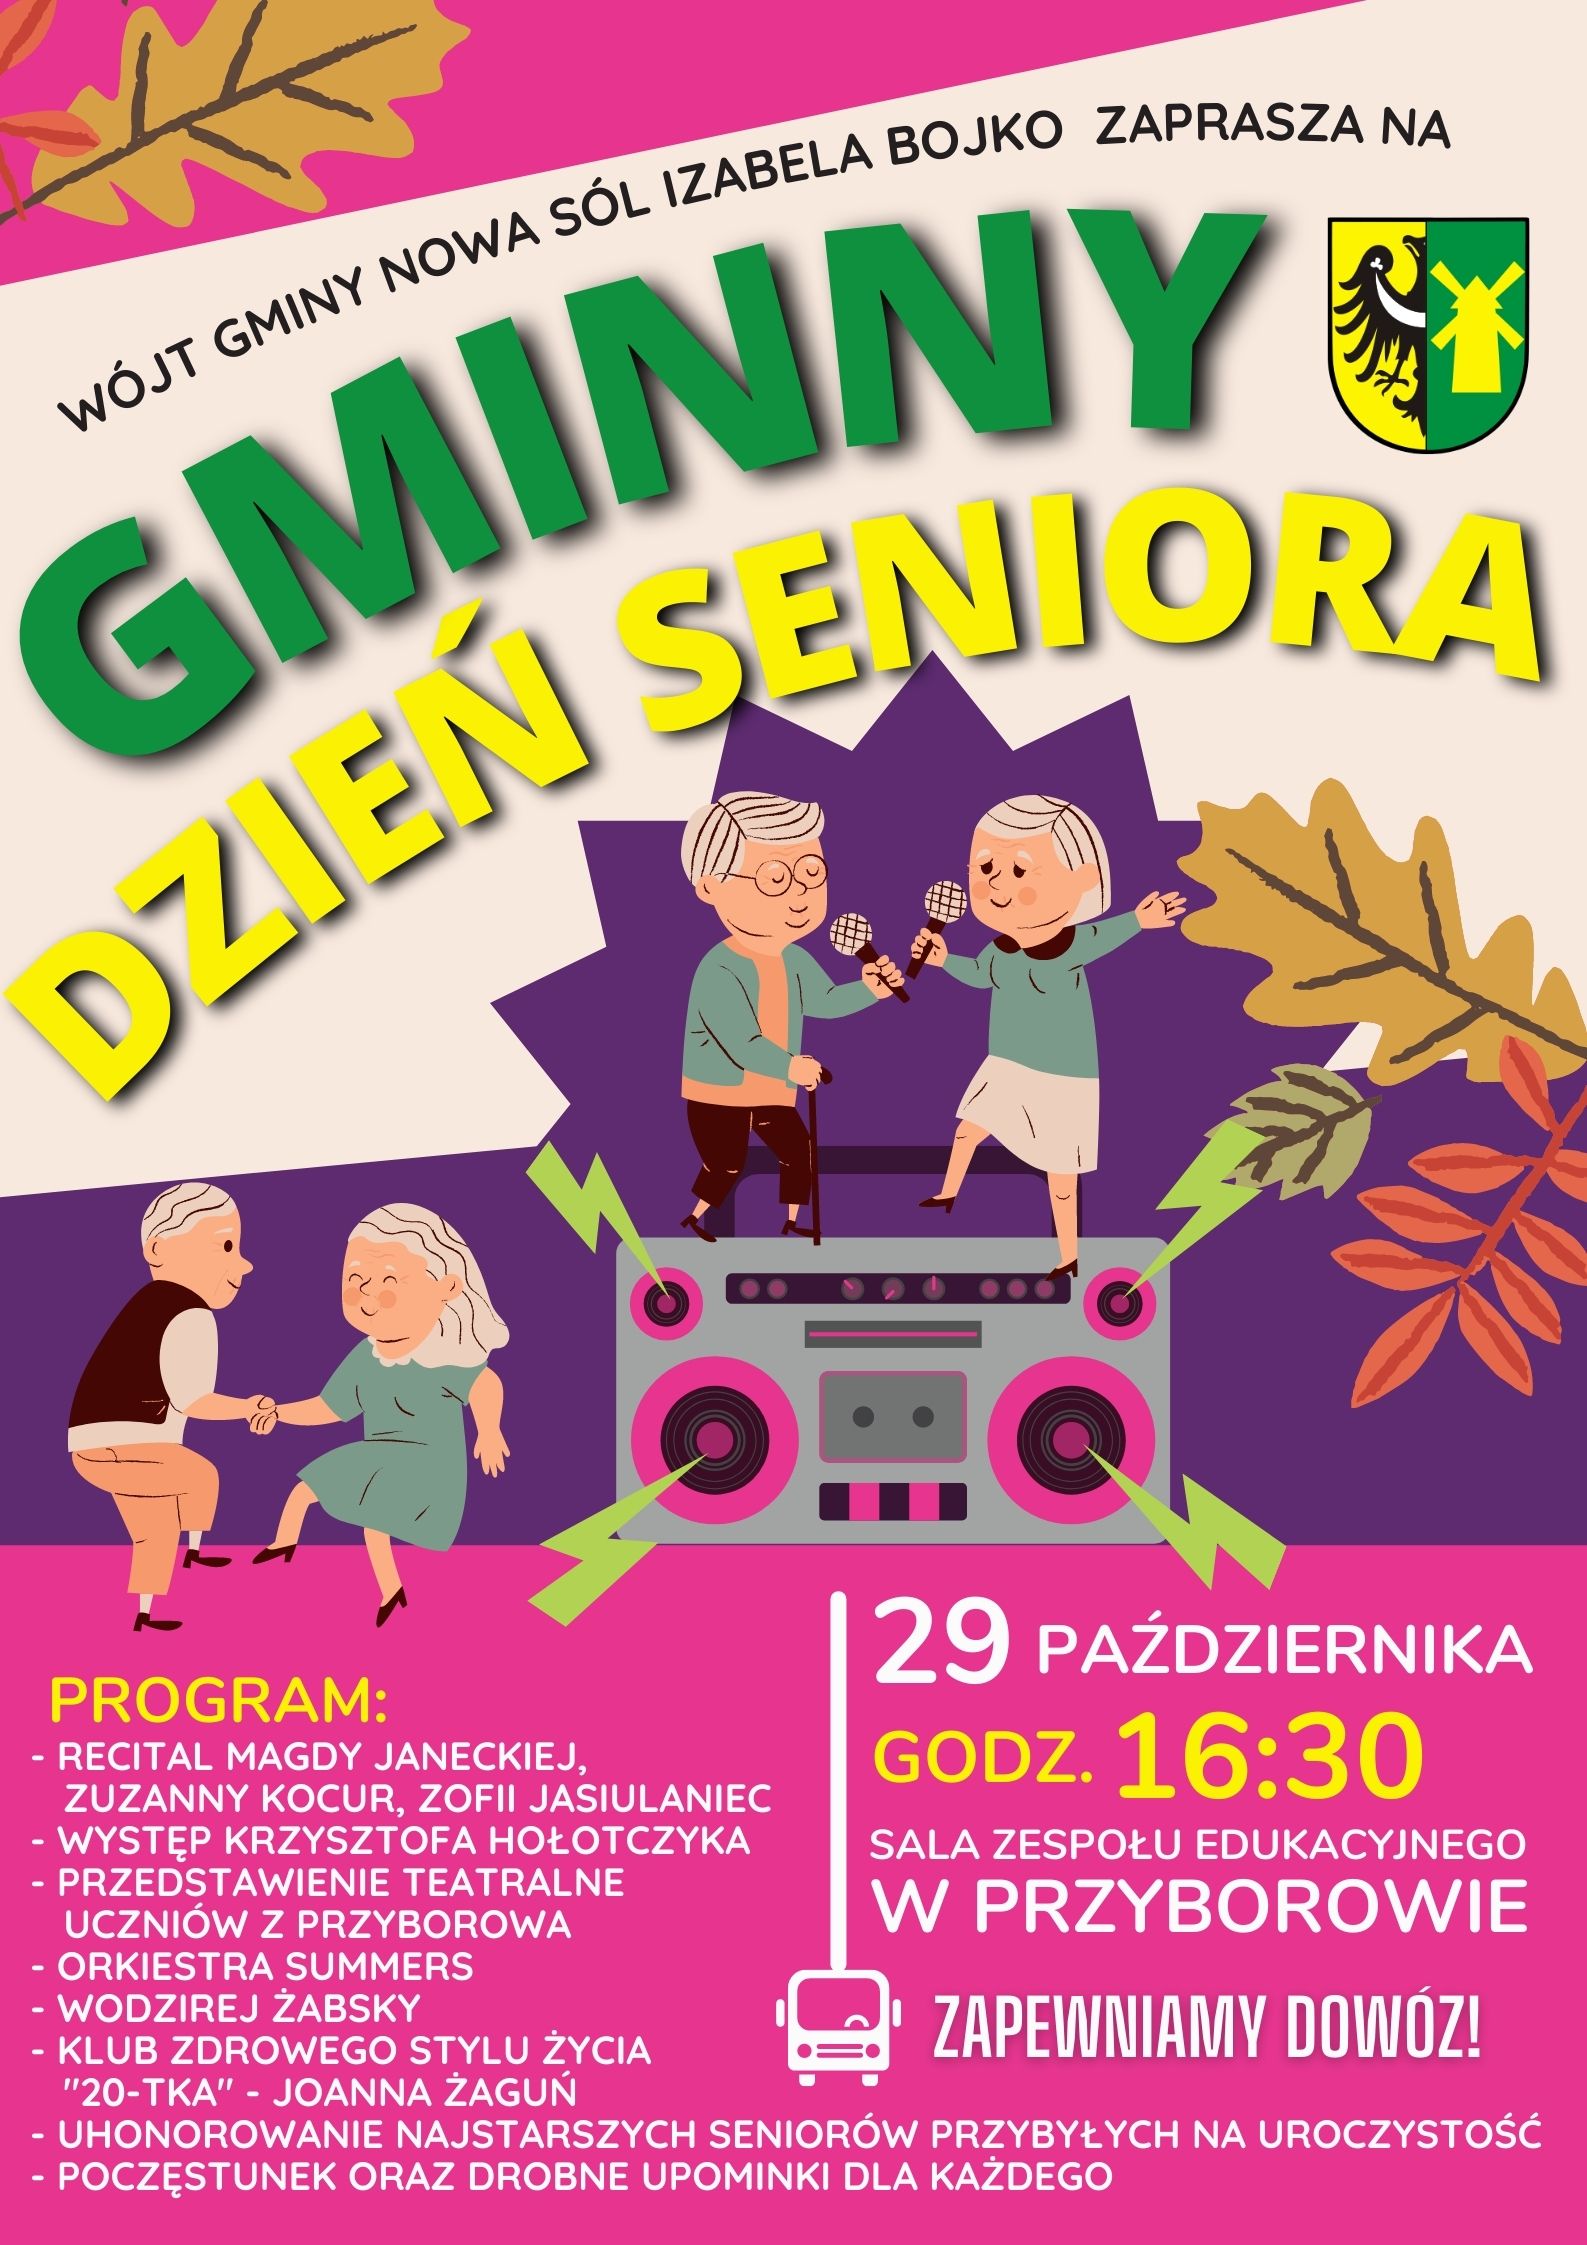 Kolorowy plakat z napisem Gminny Dzień Seniora oraz programem imprezy